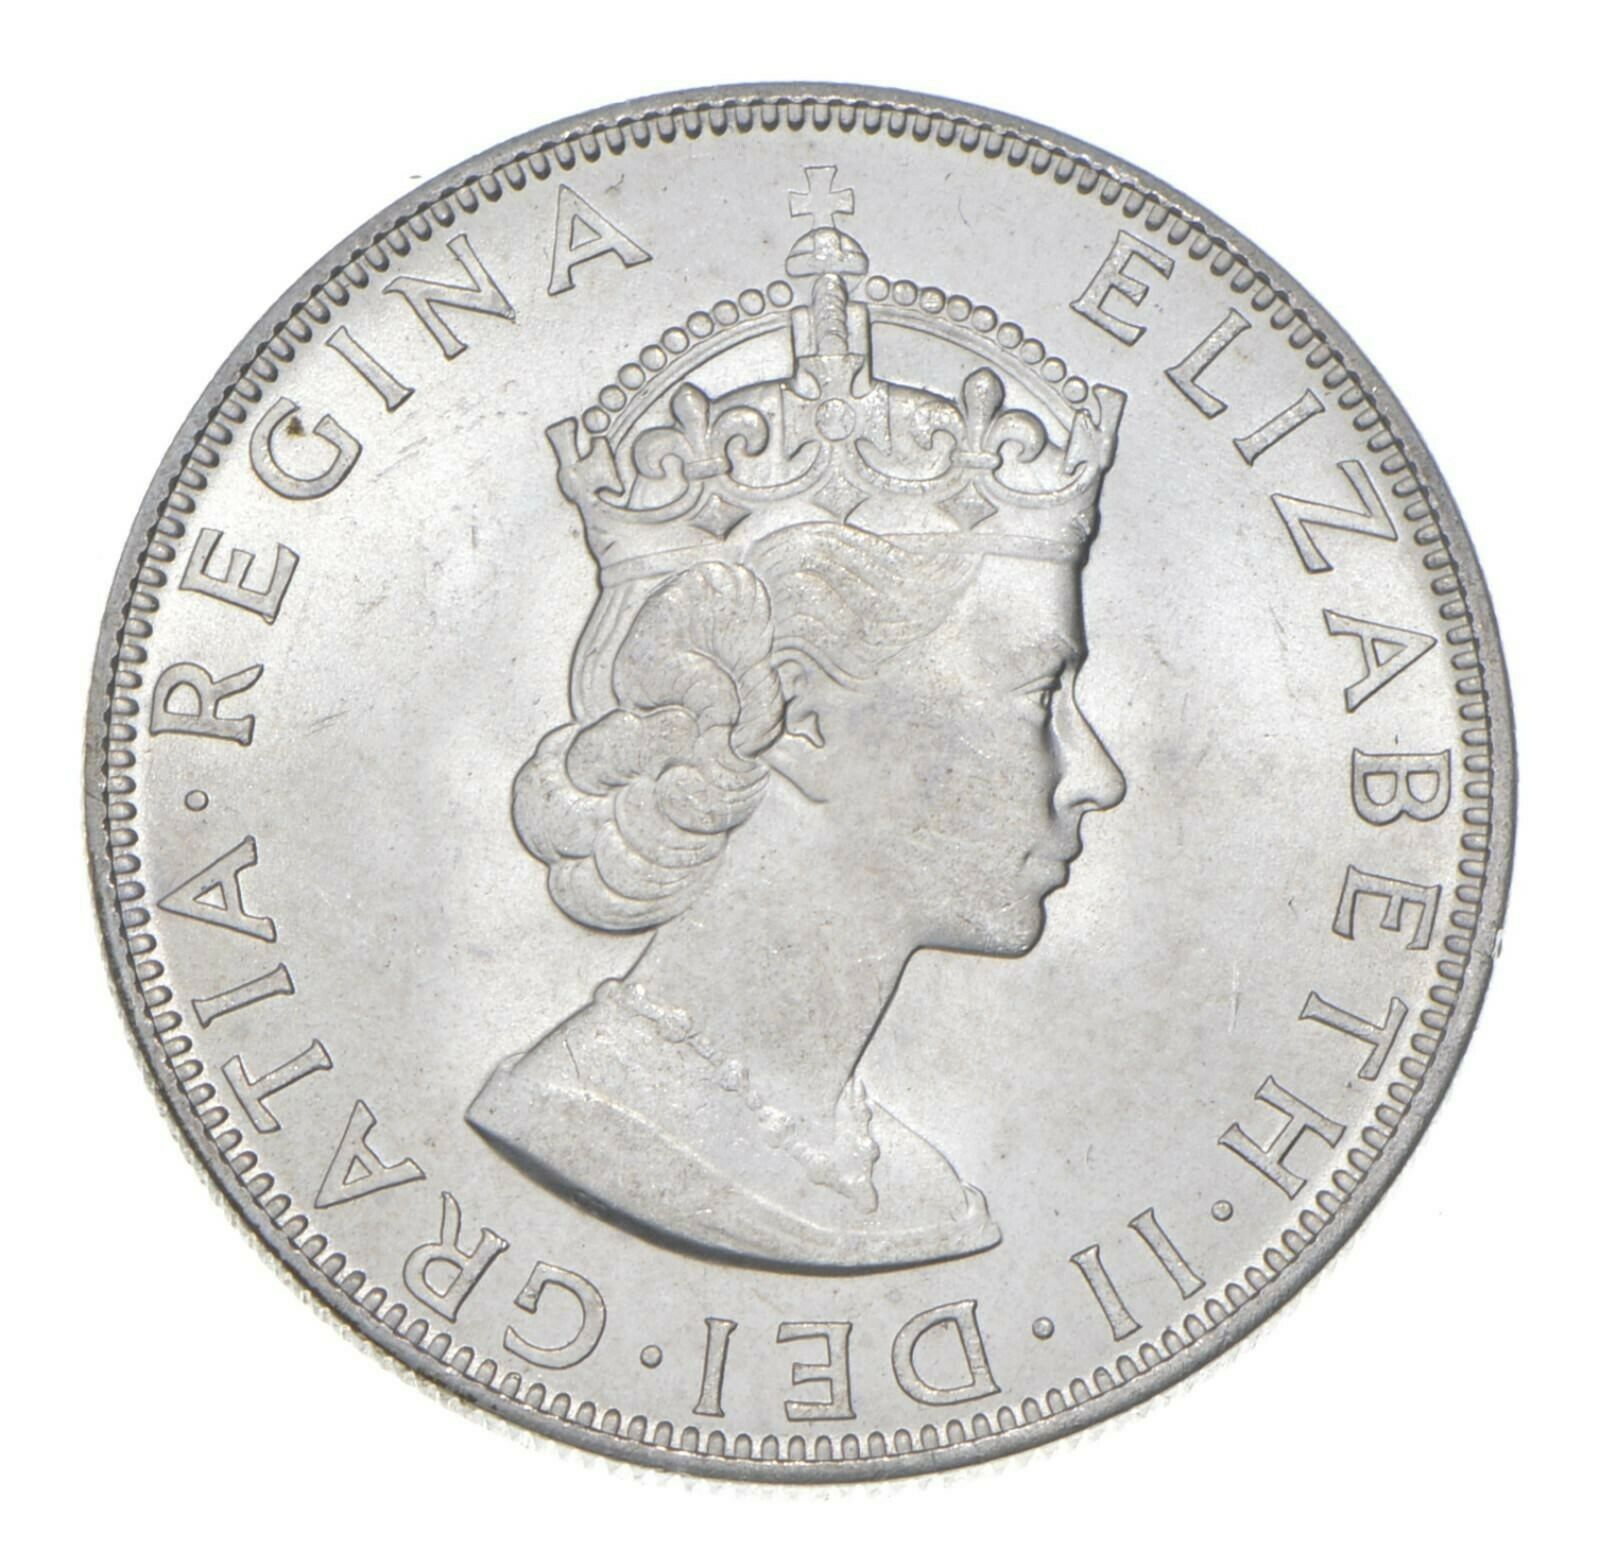 Choice Bu Unc 1964 Bermuda 1 Crown Silver Coin - Mint State *728